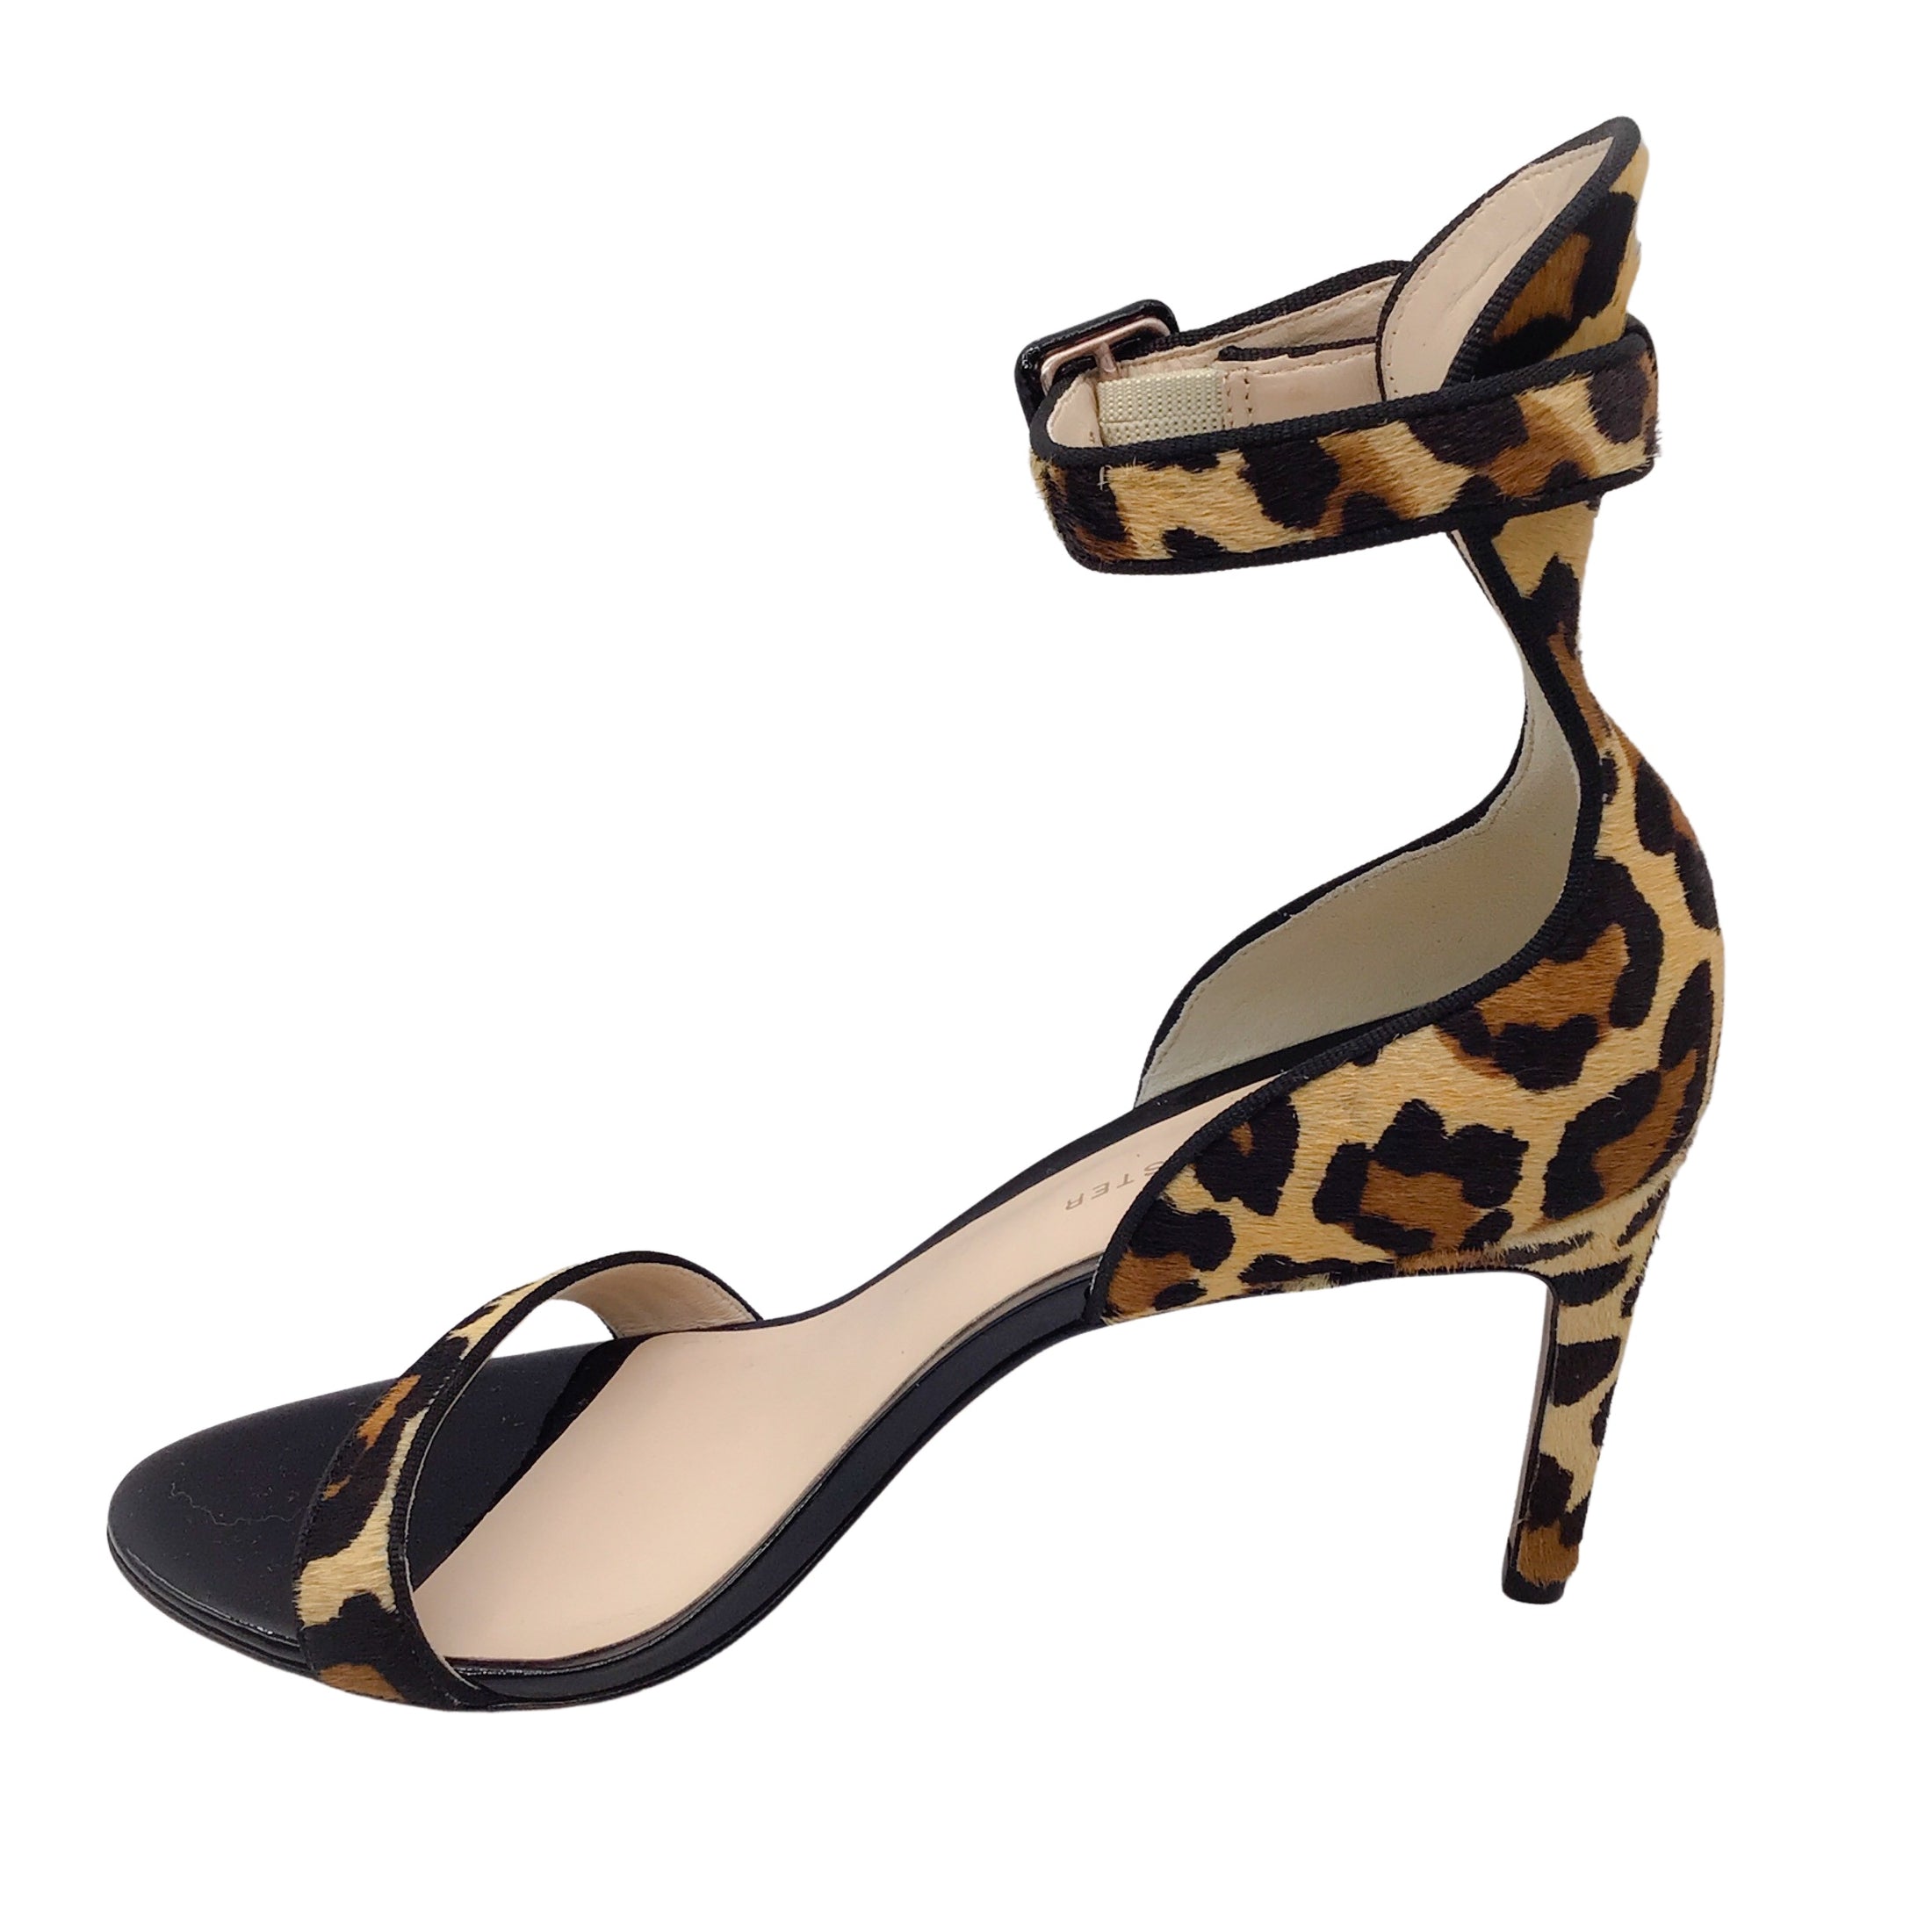 Sophia Webster Tan / Brown / Black Leopard Printed Calf Hair Ankle Strap Sandals